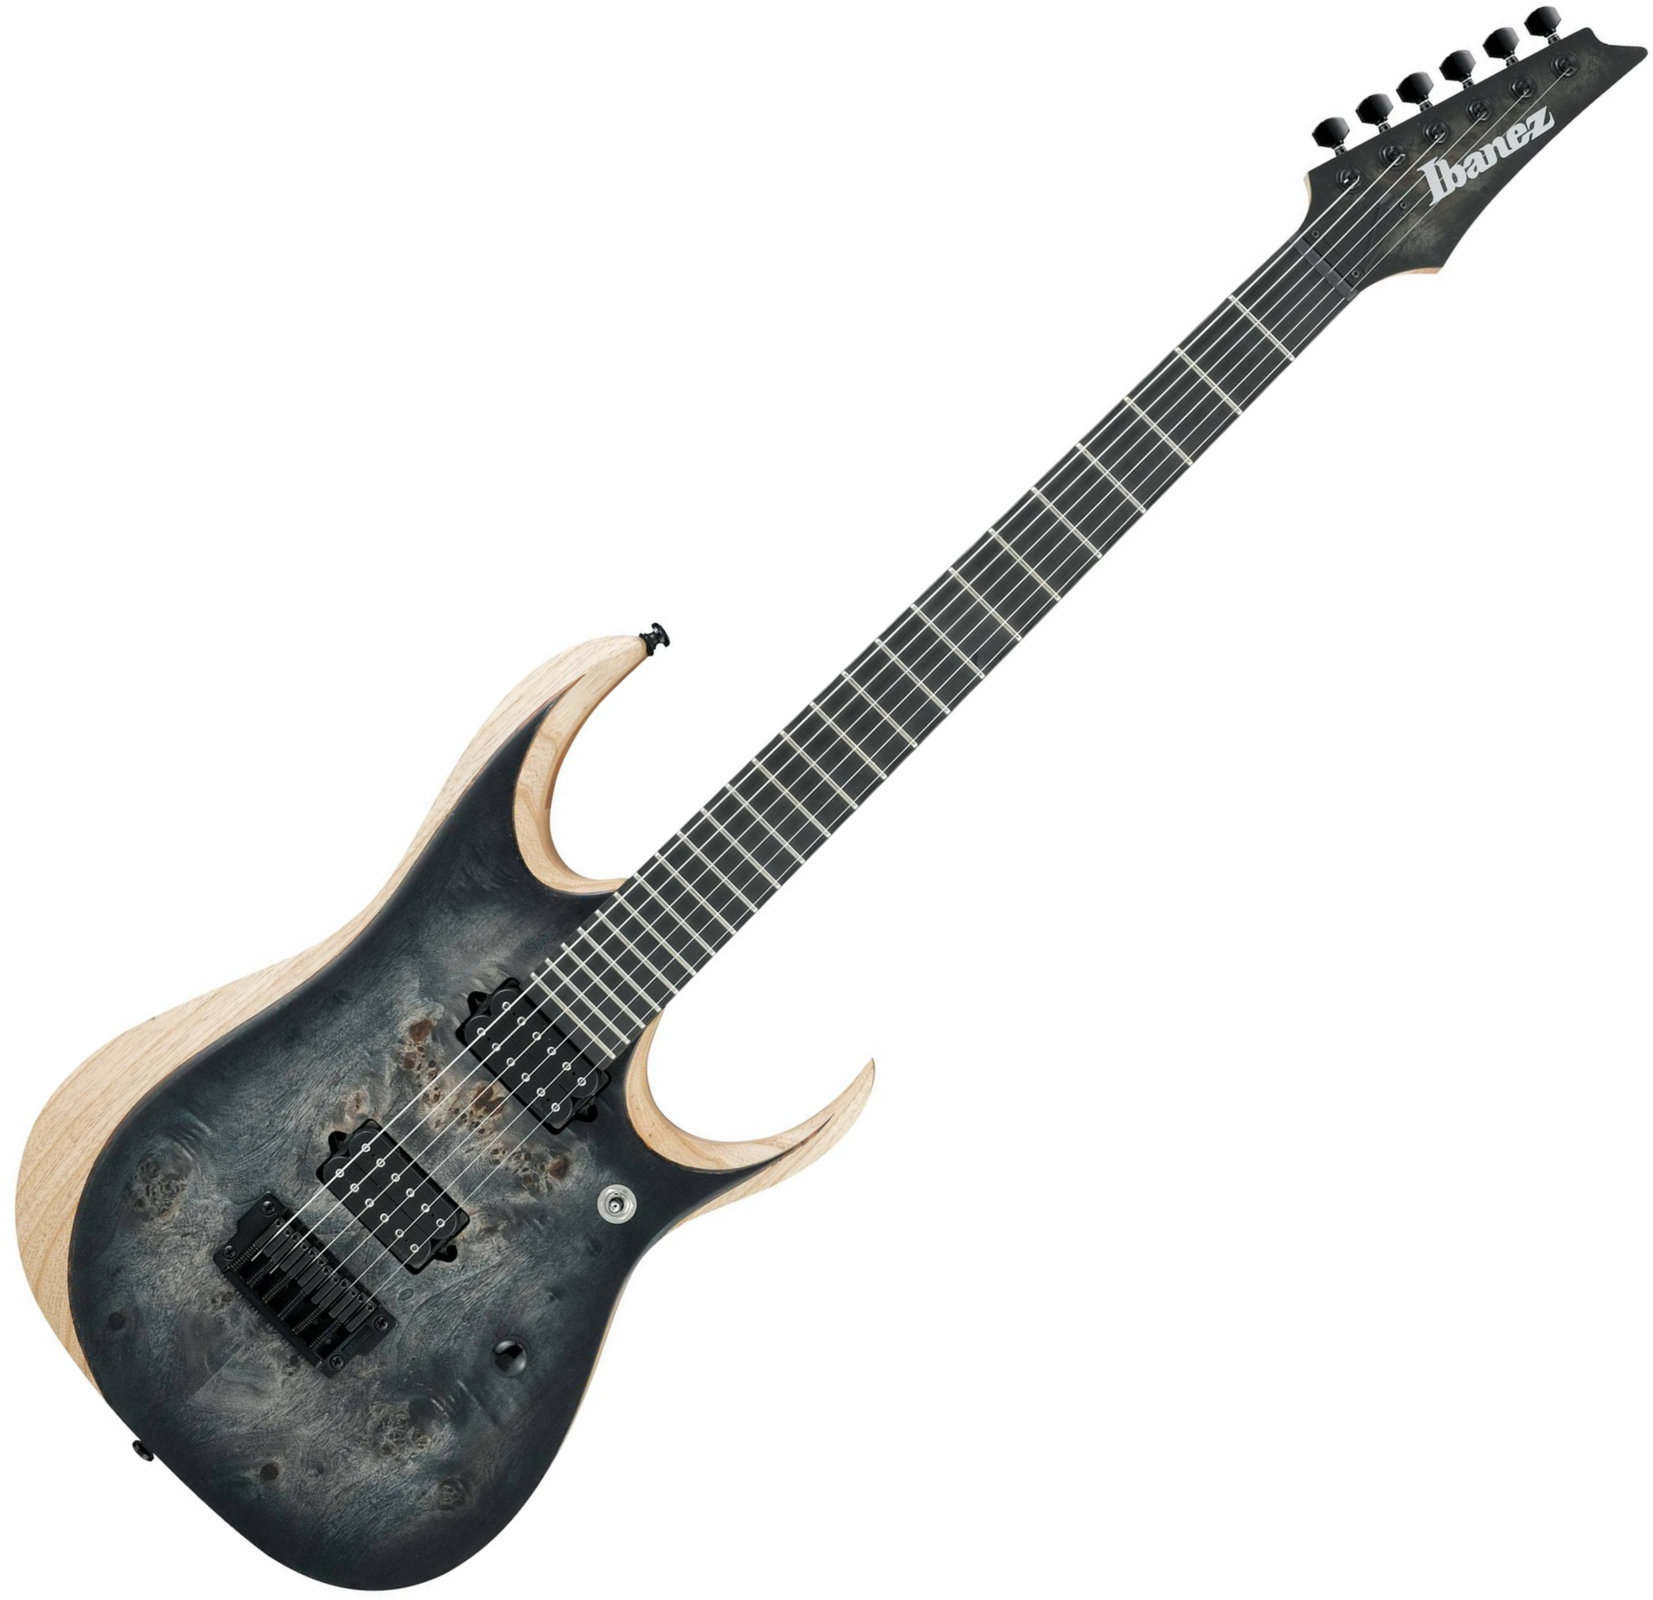 Ηλεκτρική Κιθάρα Ibanez RGDIX6PB Iron Label Surreal Black Burst